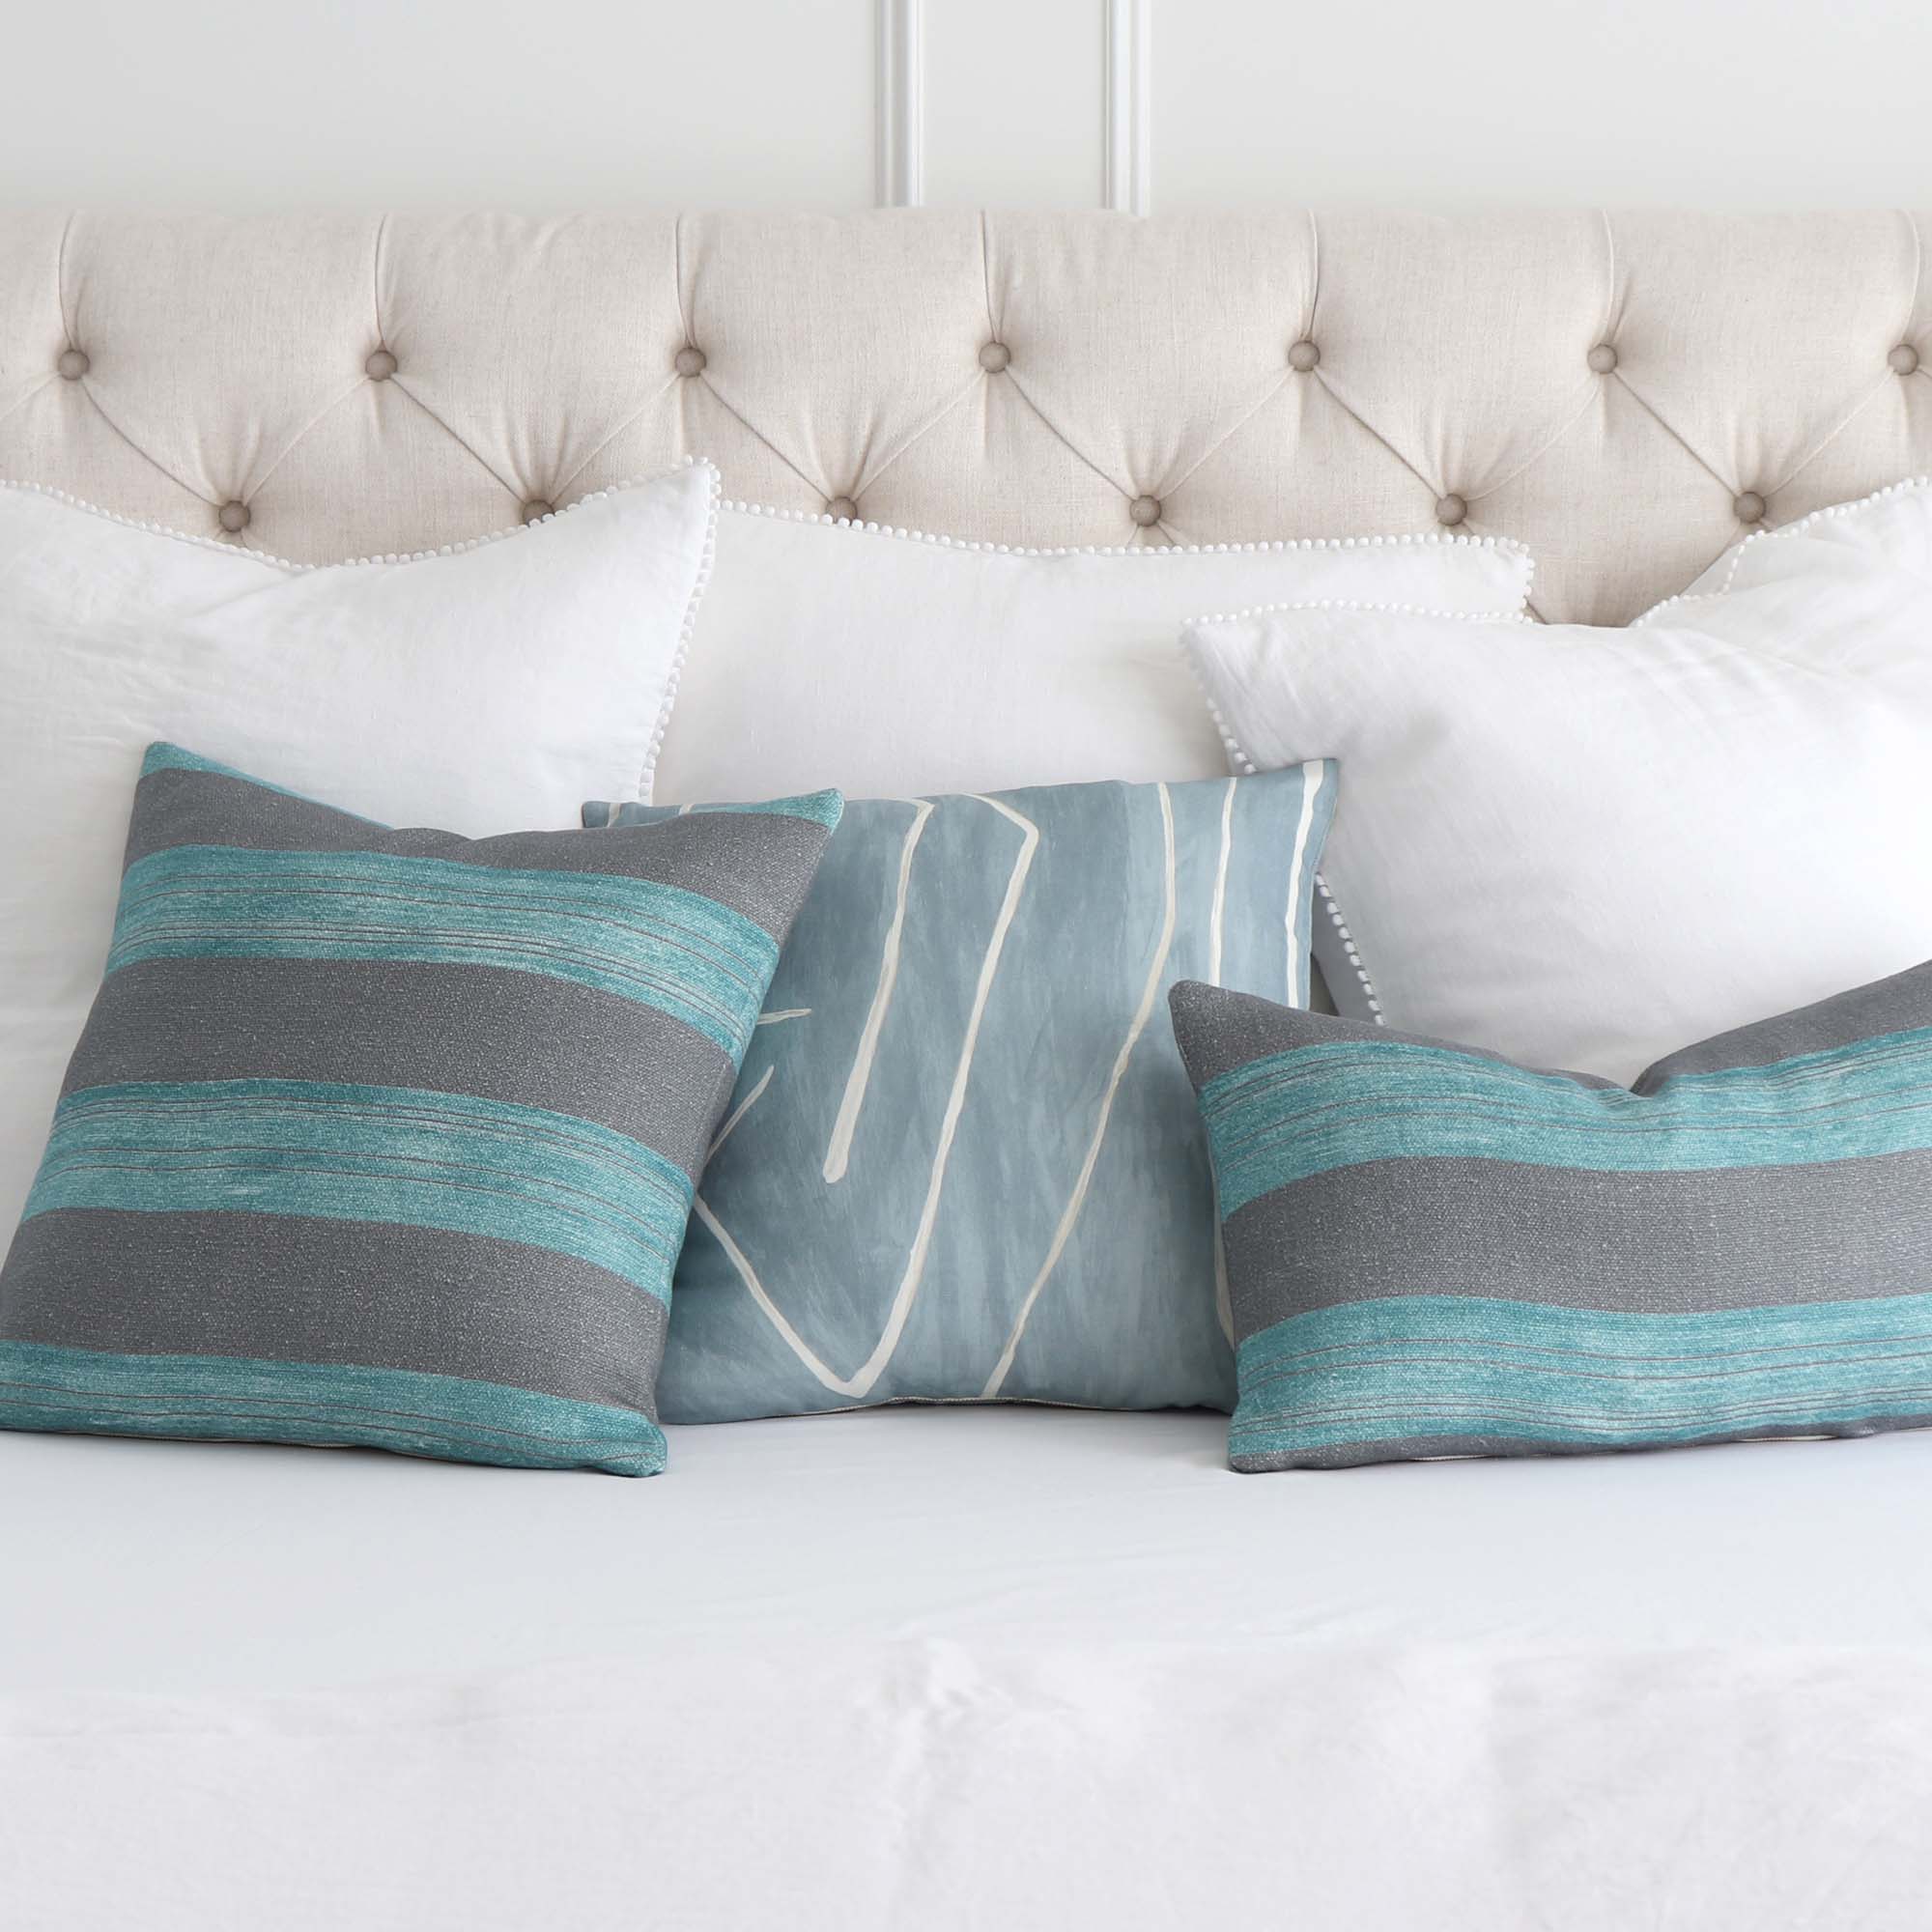 Kelly Wearstler Askew Slate Jade Stripes Linen Designer Luxury Throw Pillow Cover